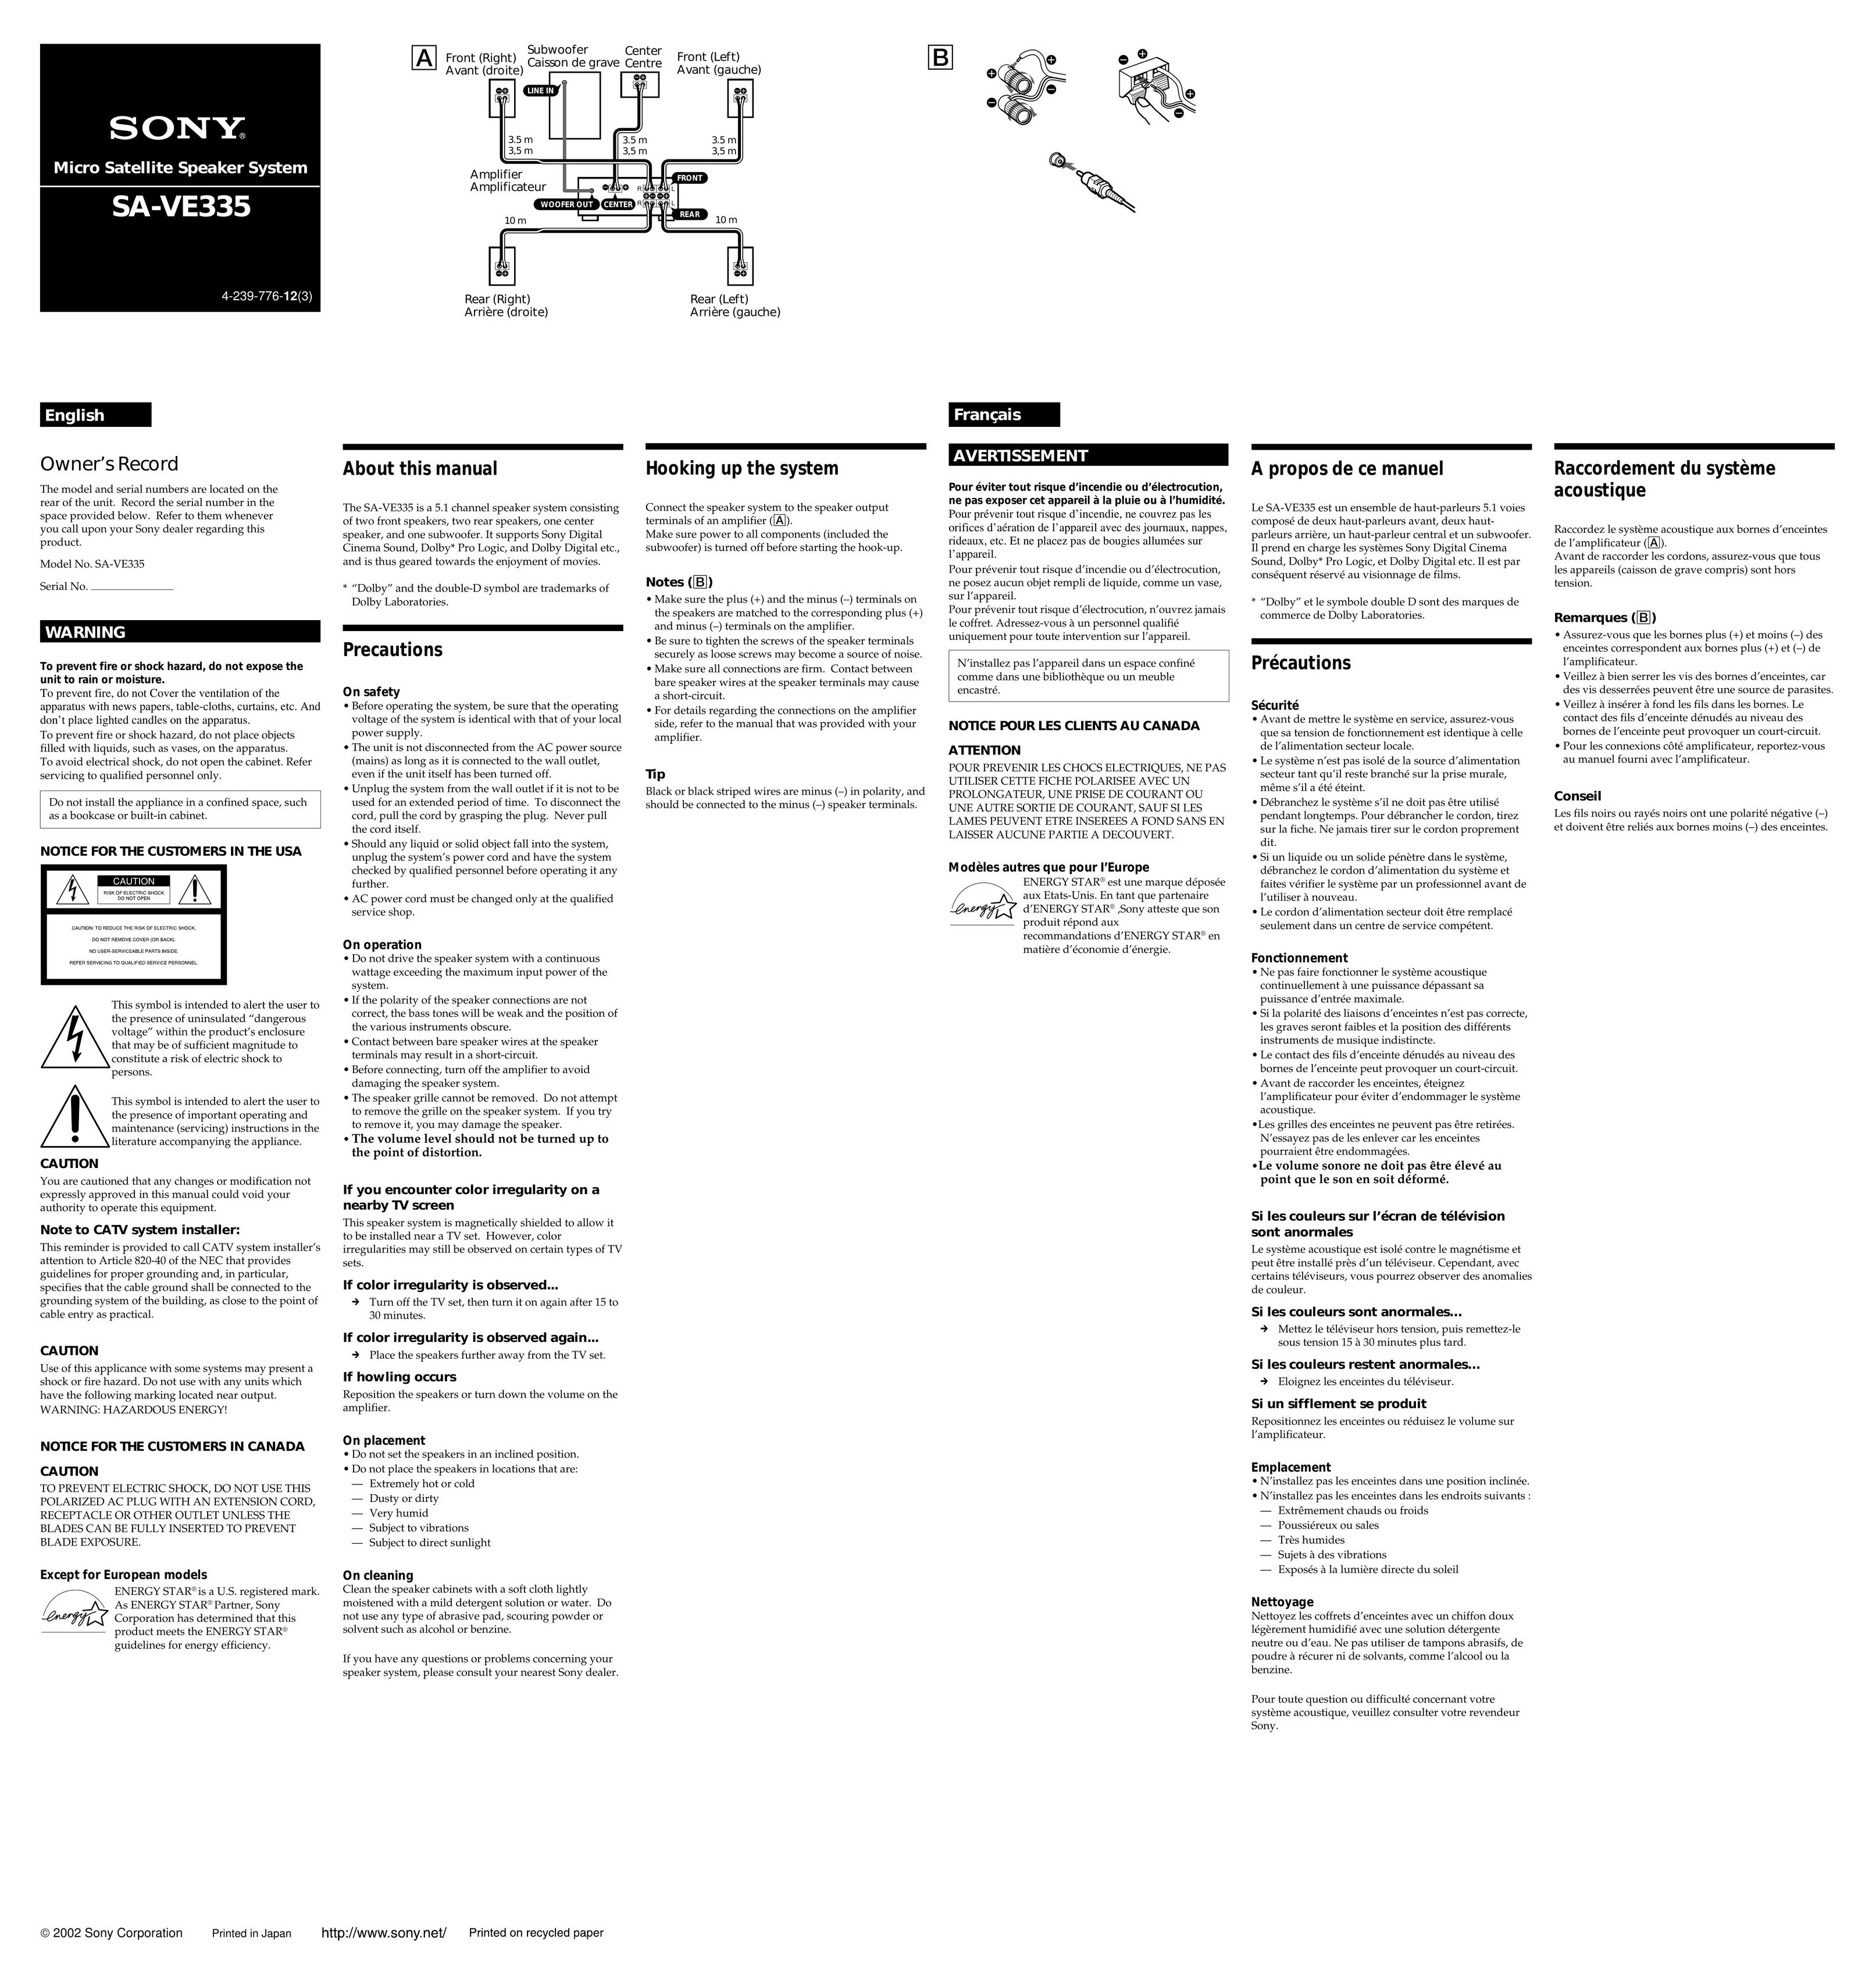 Sony SA-VE335 Speaker User Manual